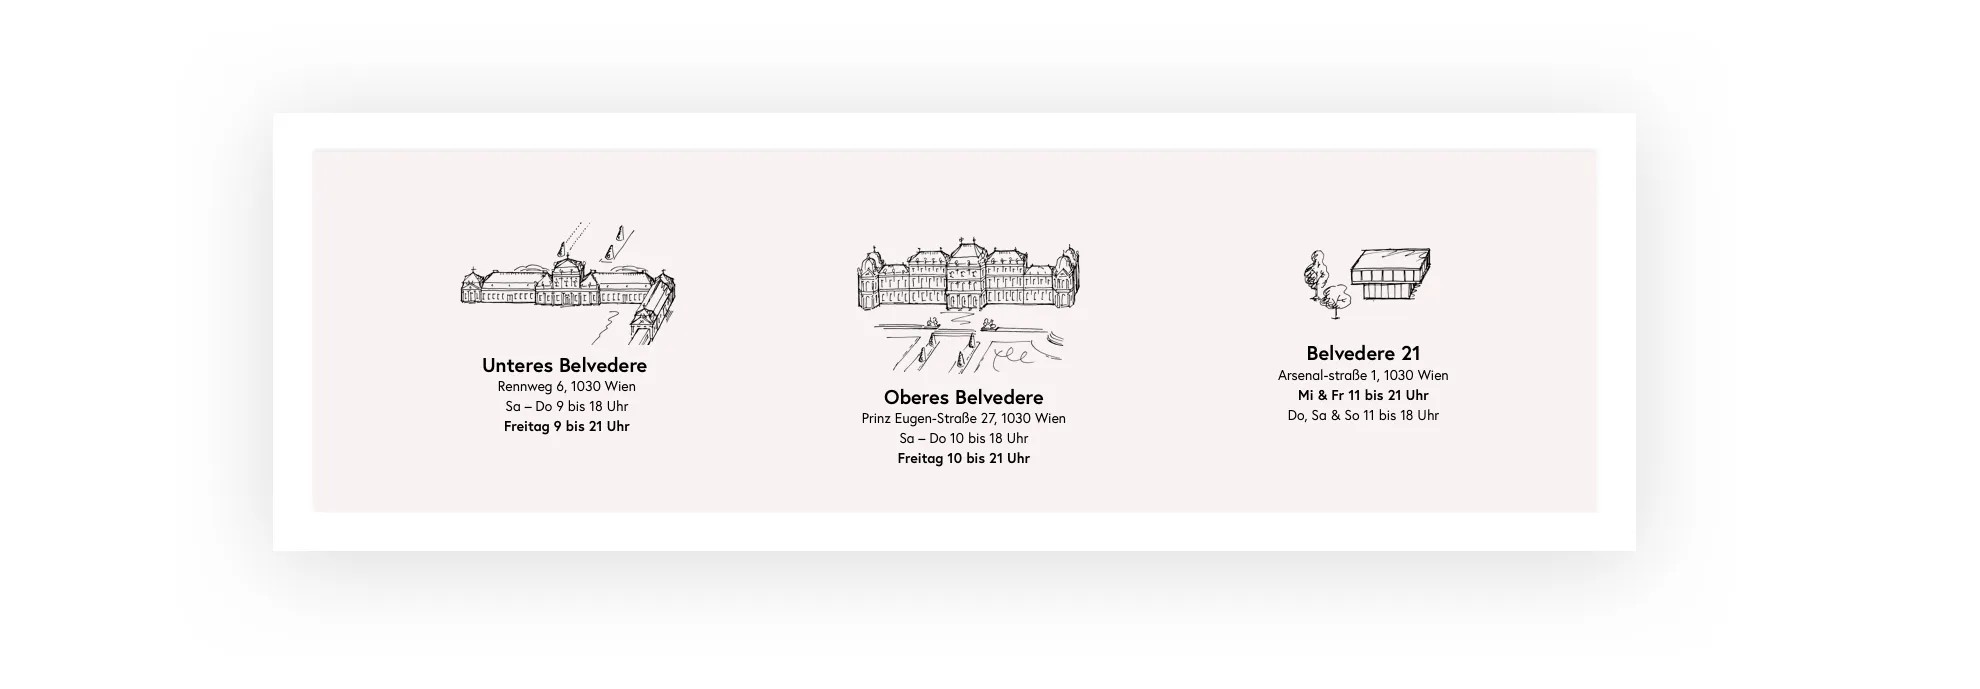 Eine Illustration der drei Häuser mit Adresse im Footer der Website.